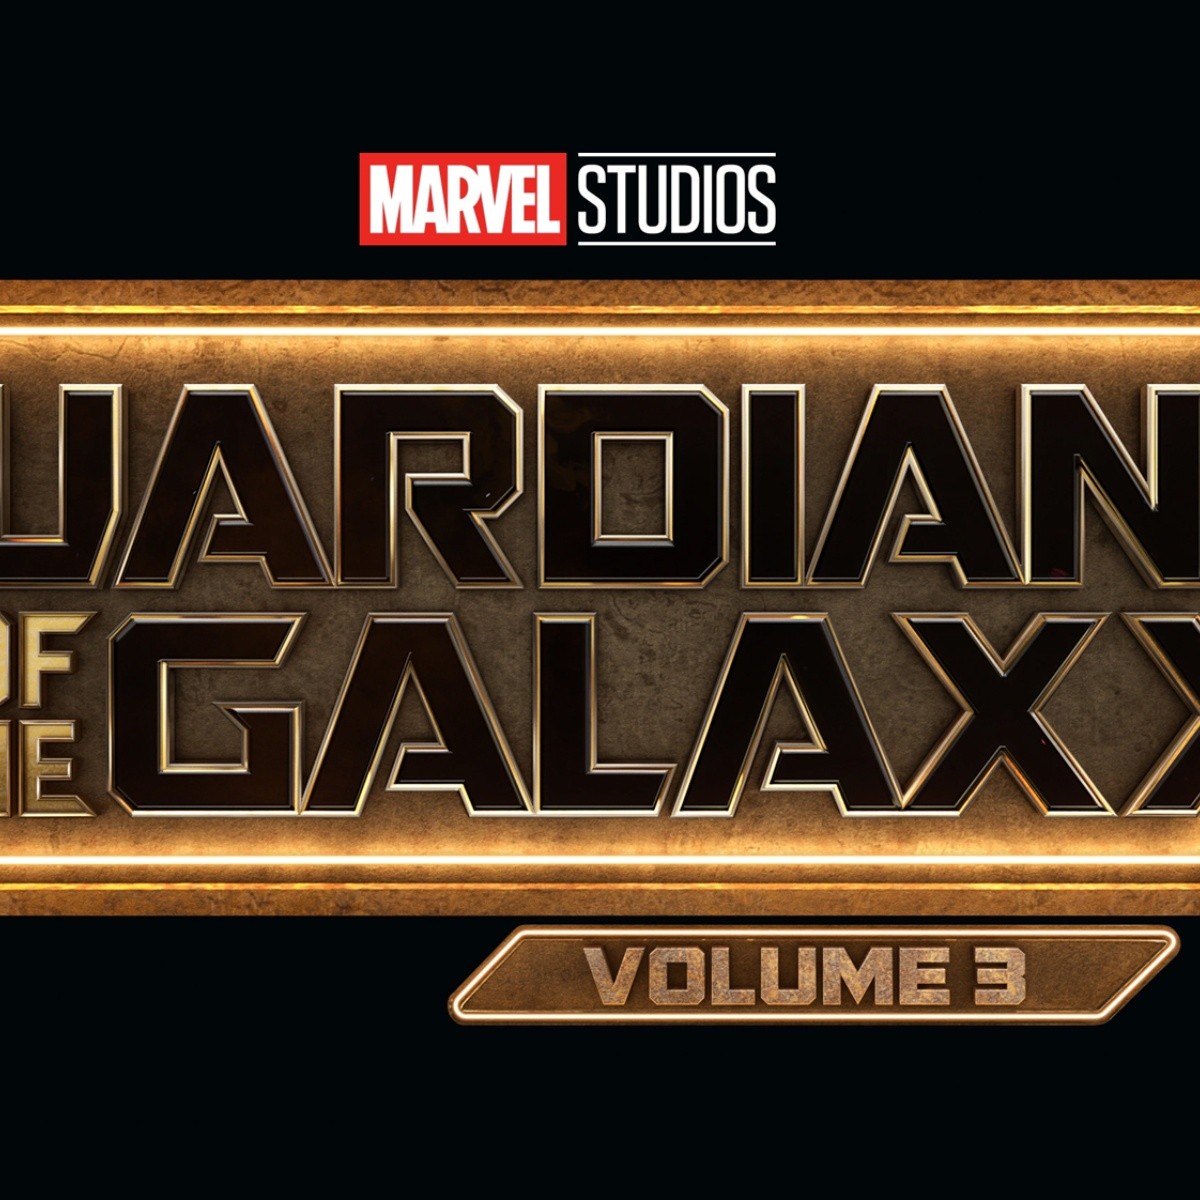 Guardianes de la galaxia Vol. 3″ llega a Disney + y esta es la fecha de su  estreno